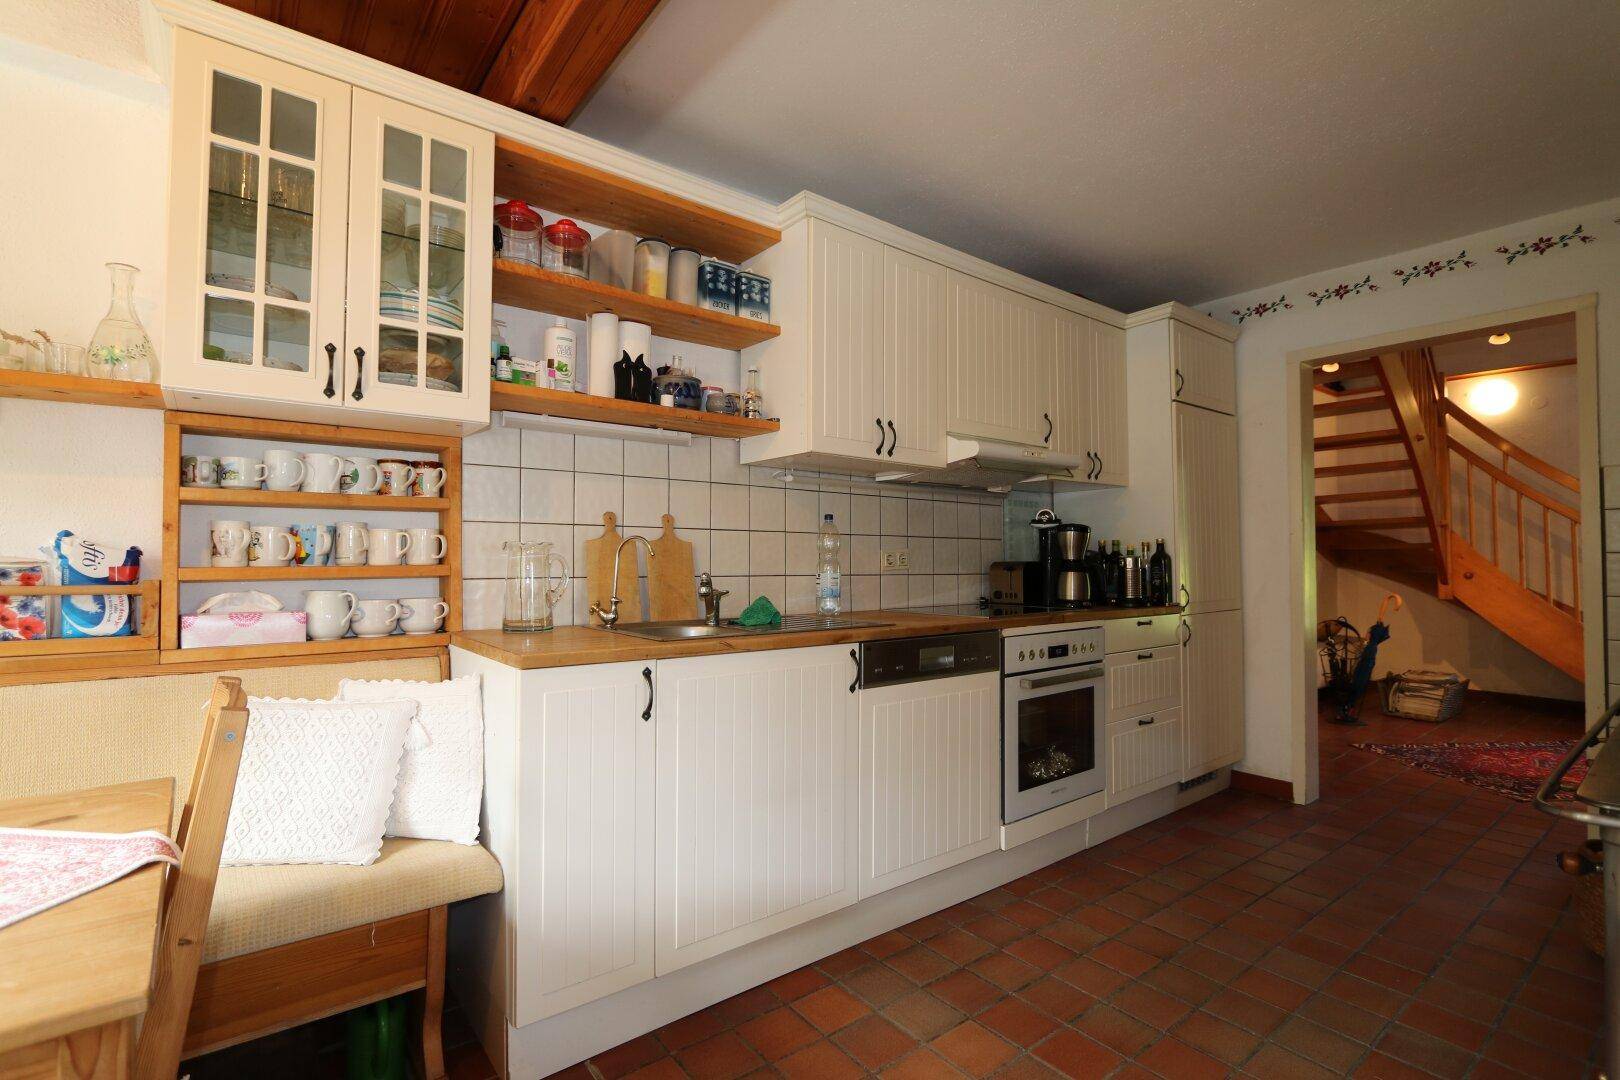 möblierte Küche mit kleiner Eckbank und Holzküchenofen